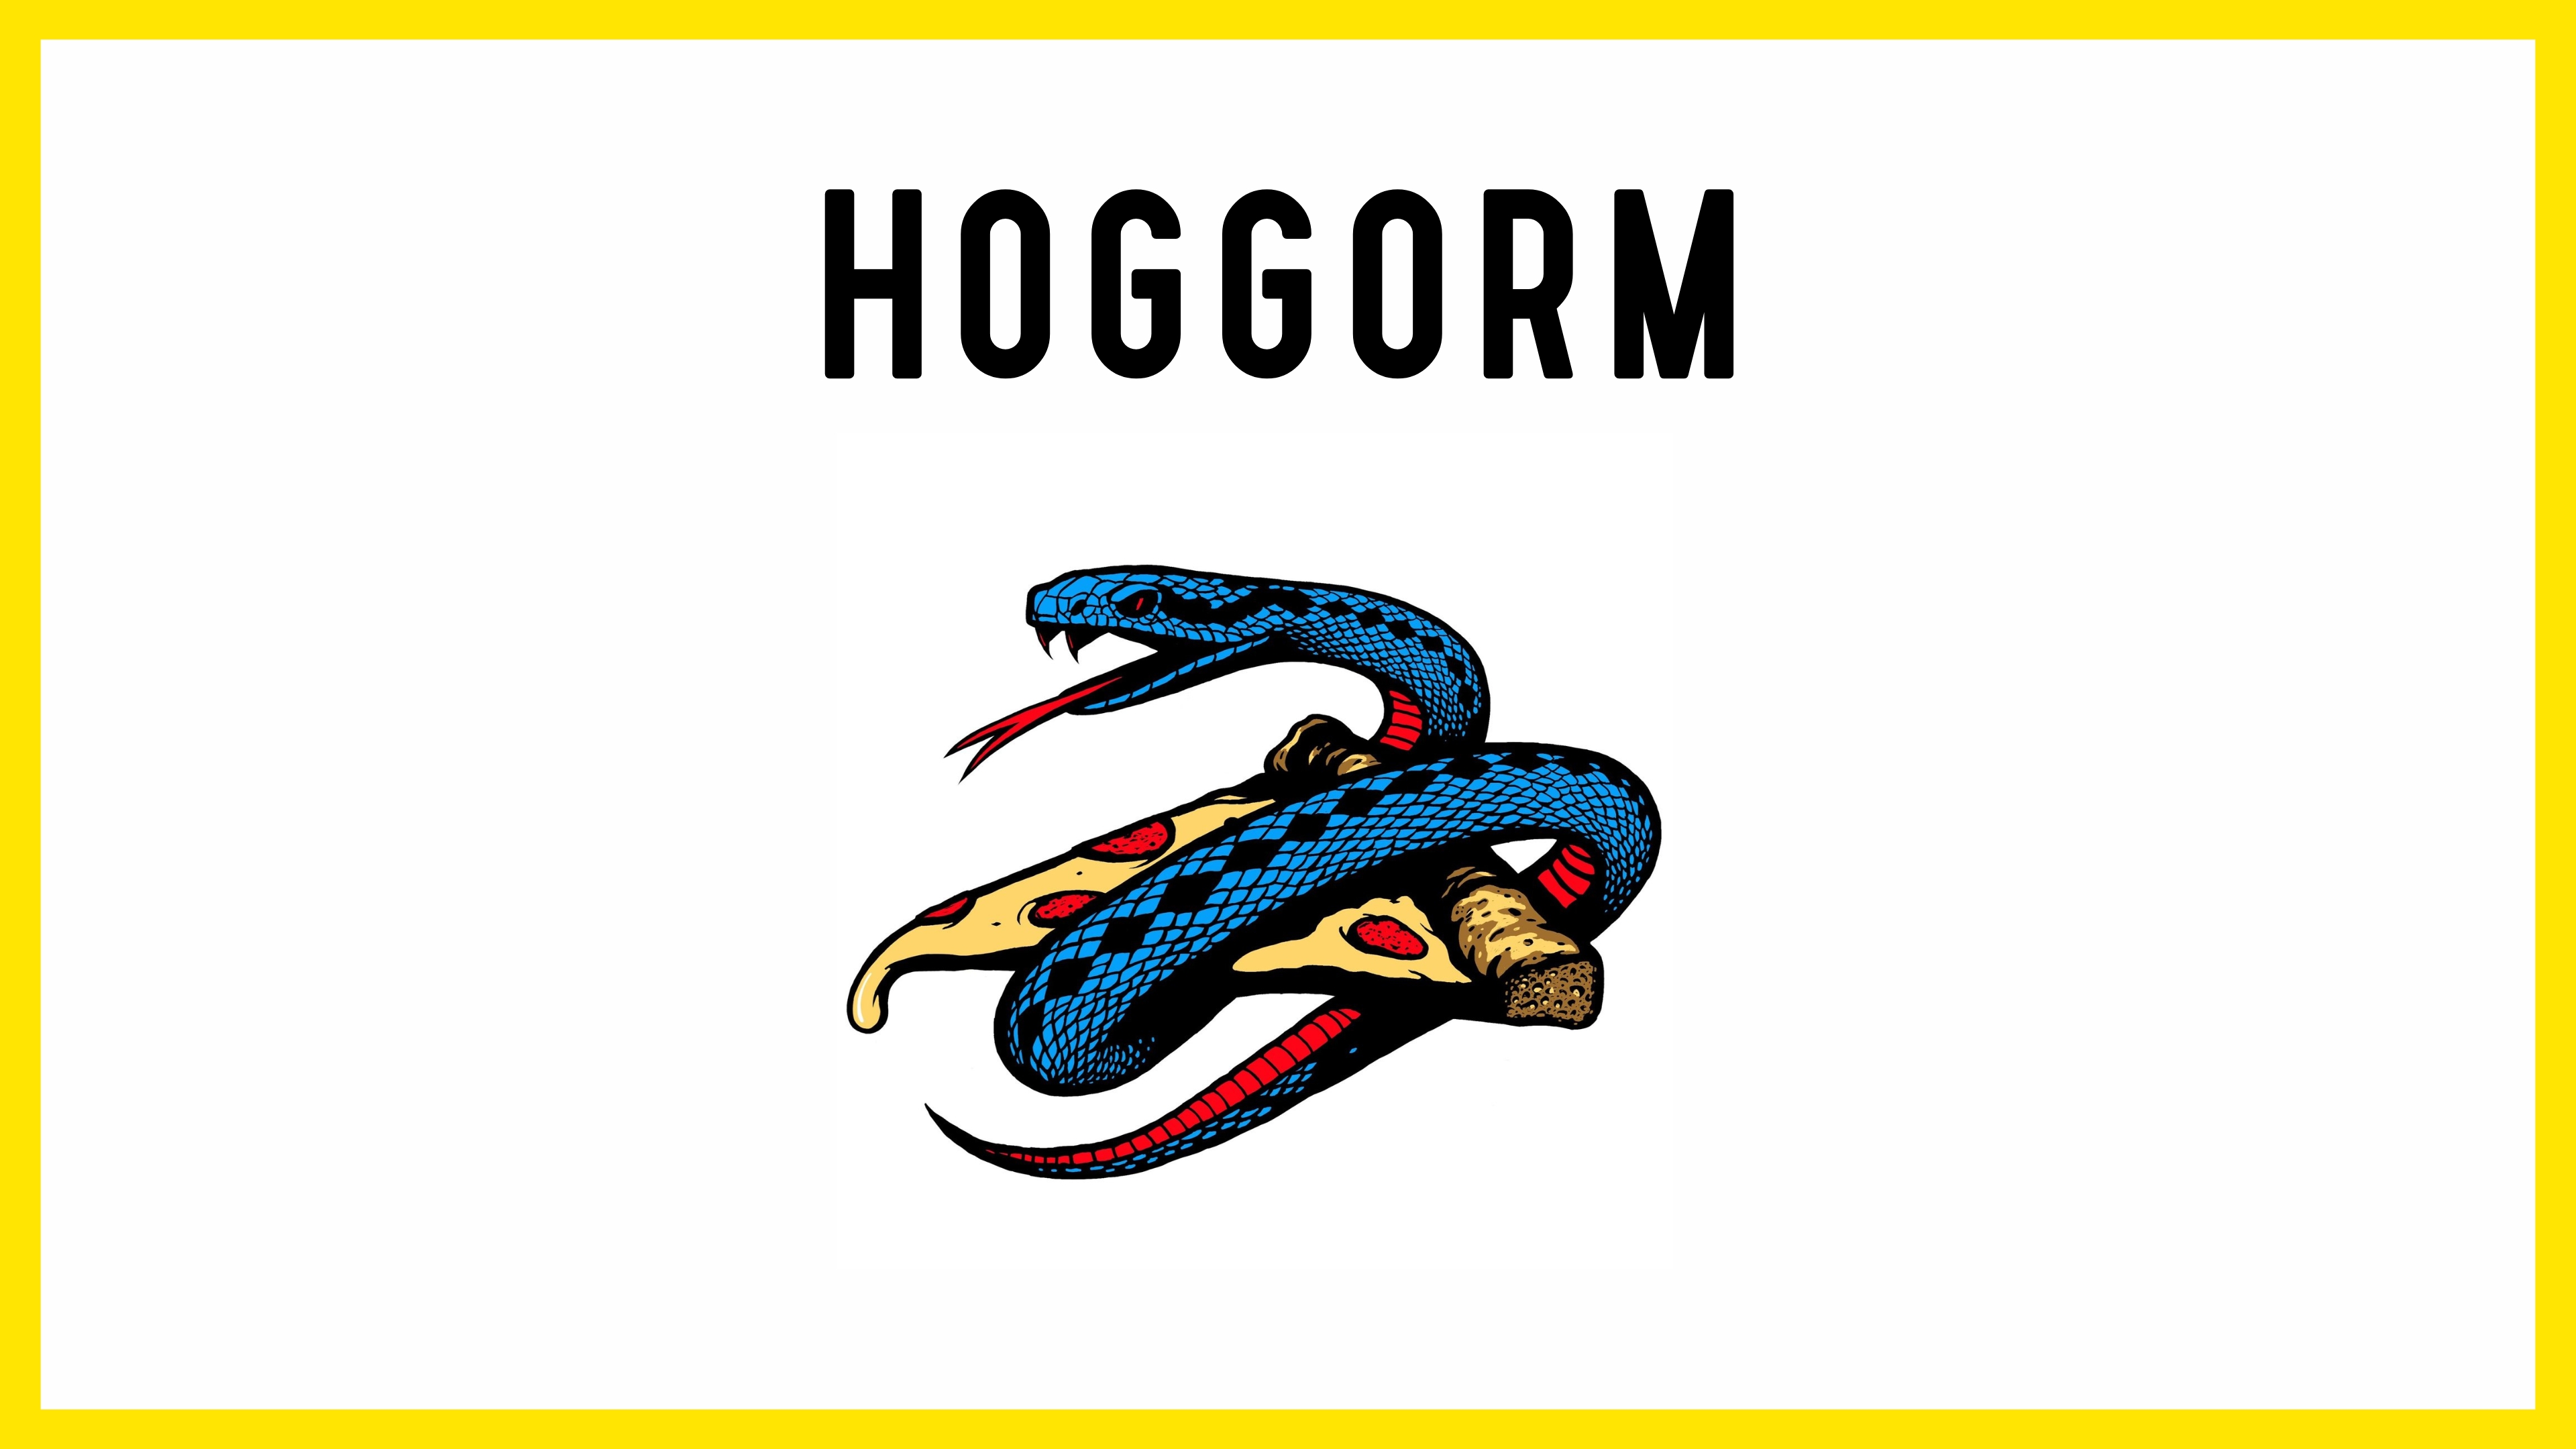 HOGGORM AS